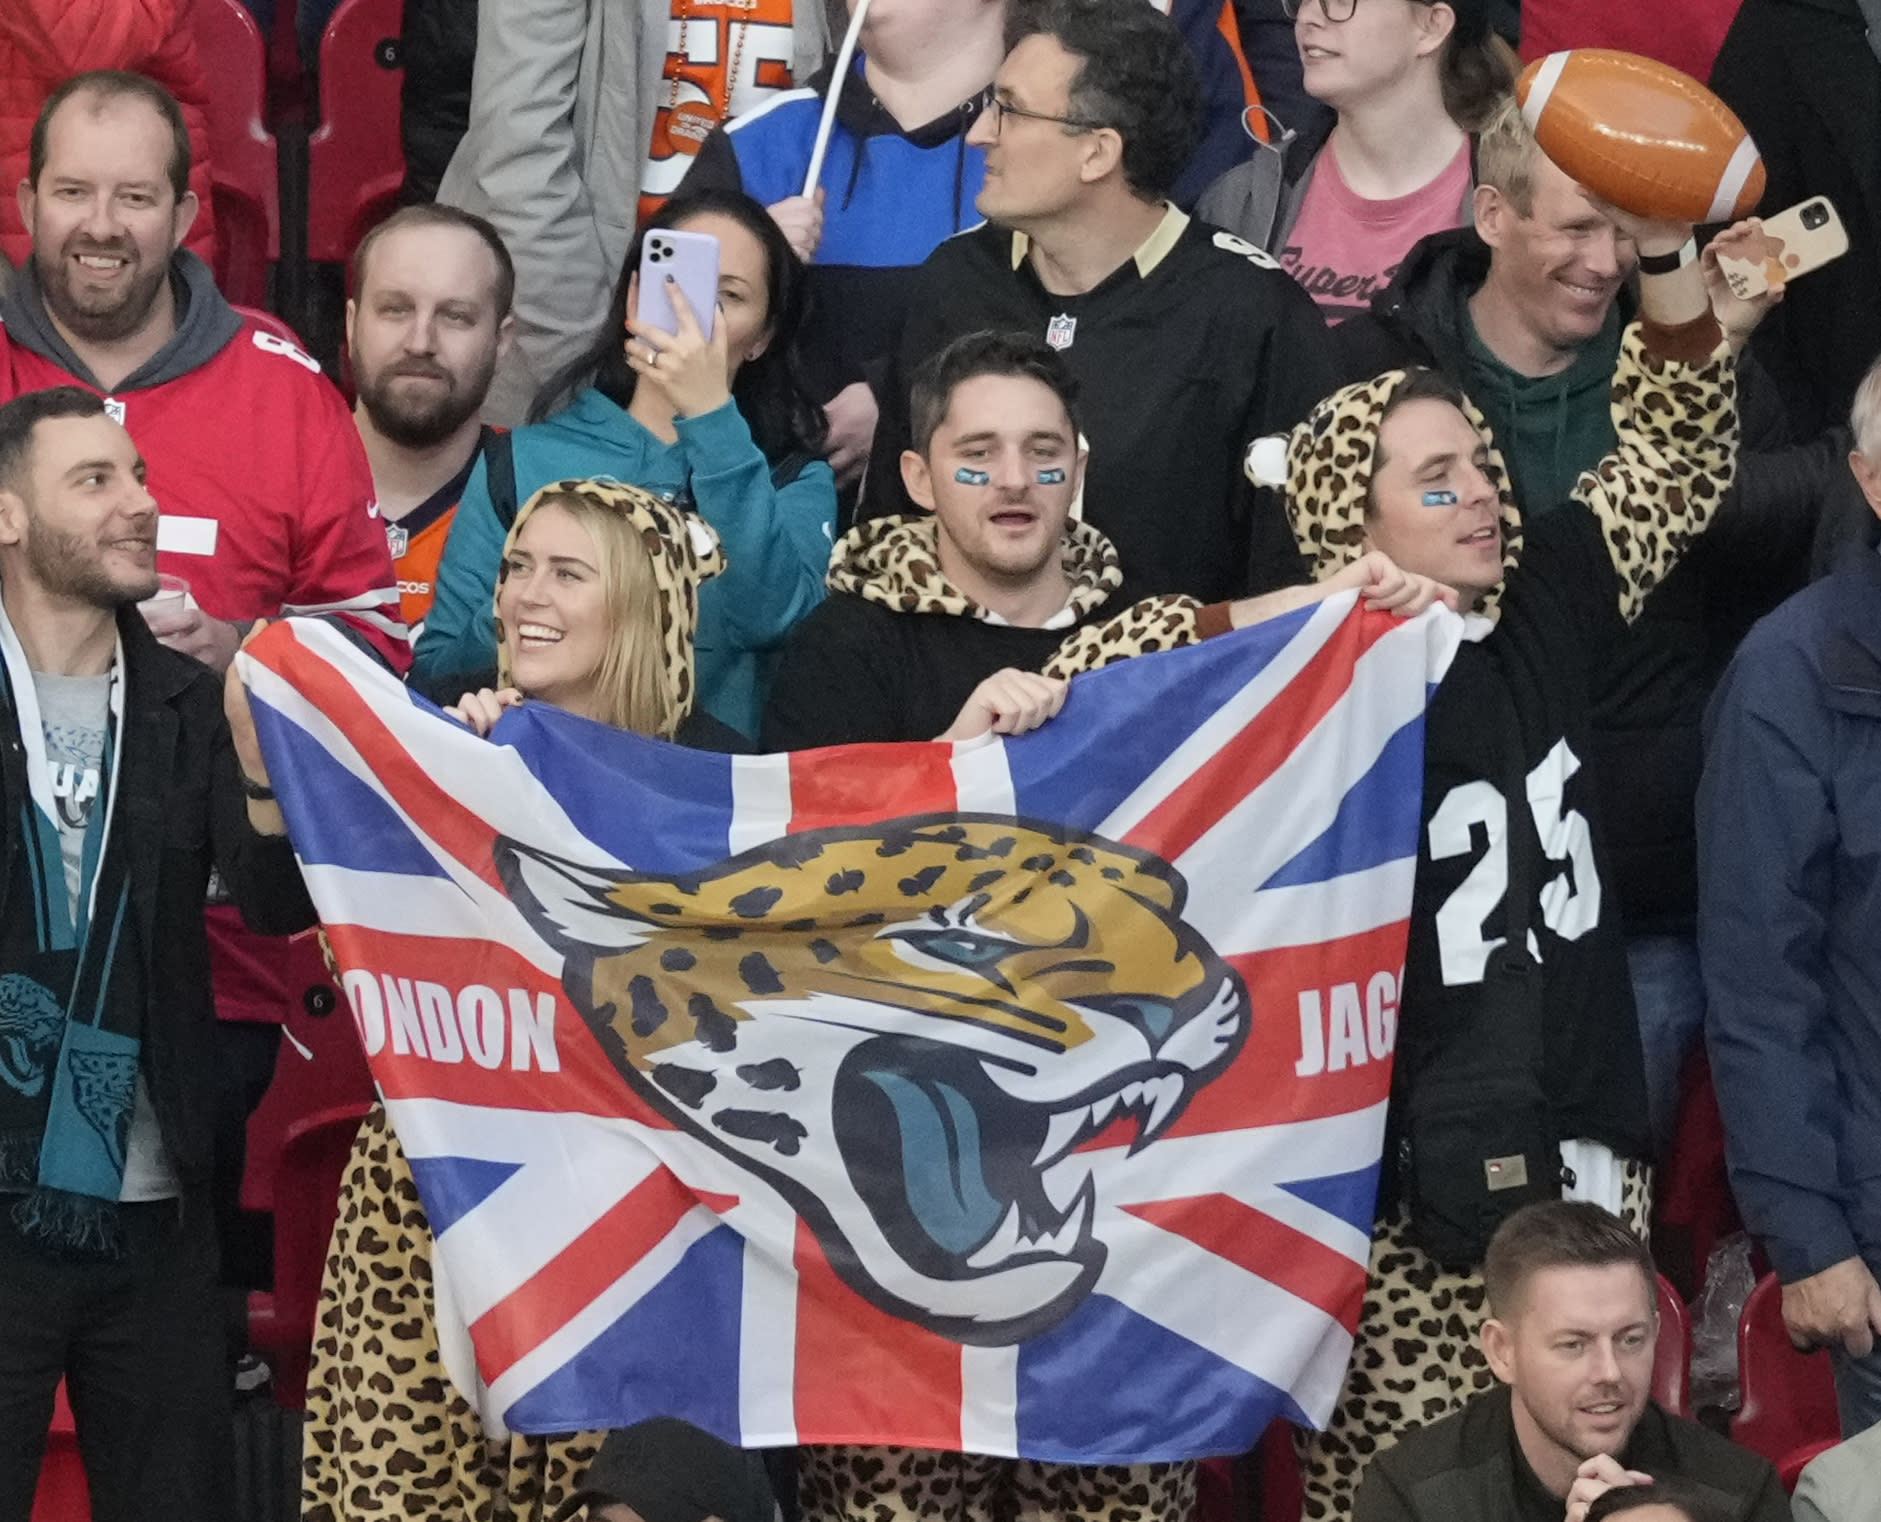 British fans flying a London Jaguars flag